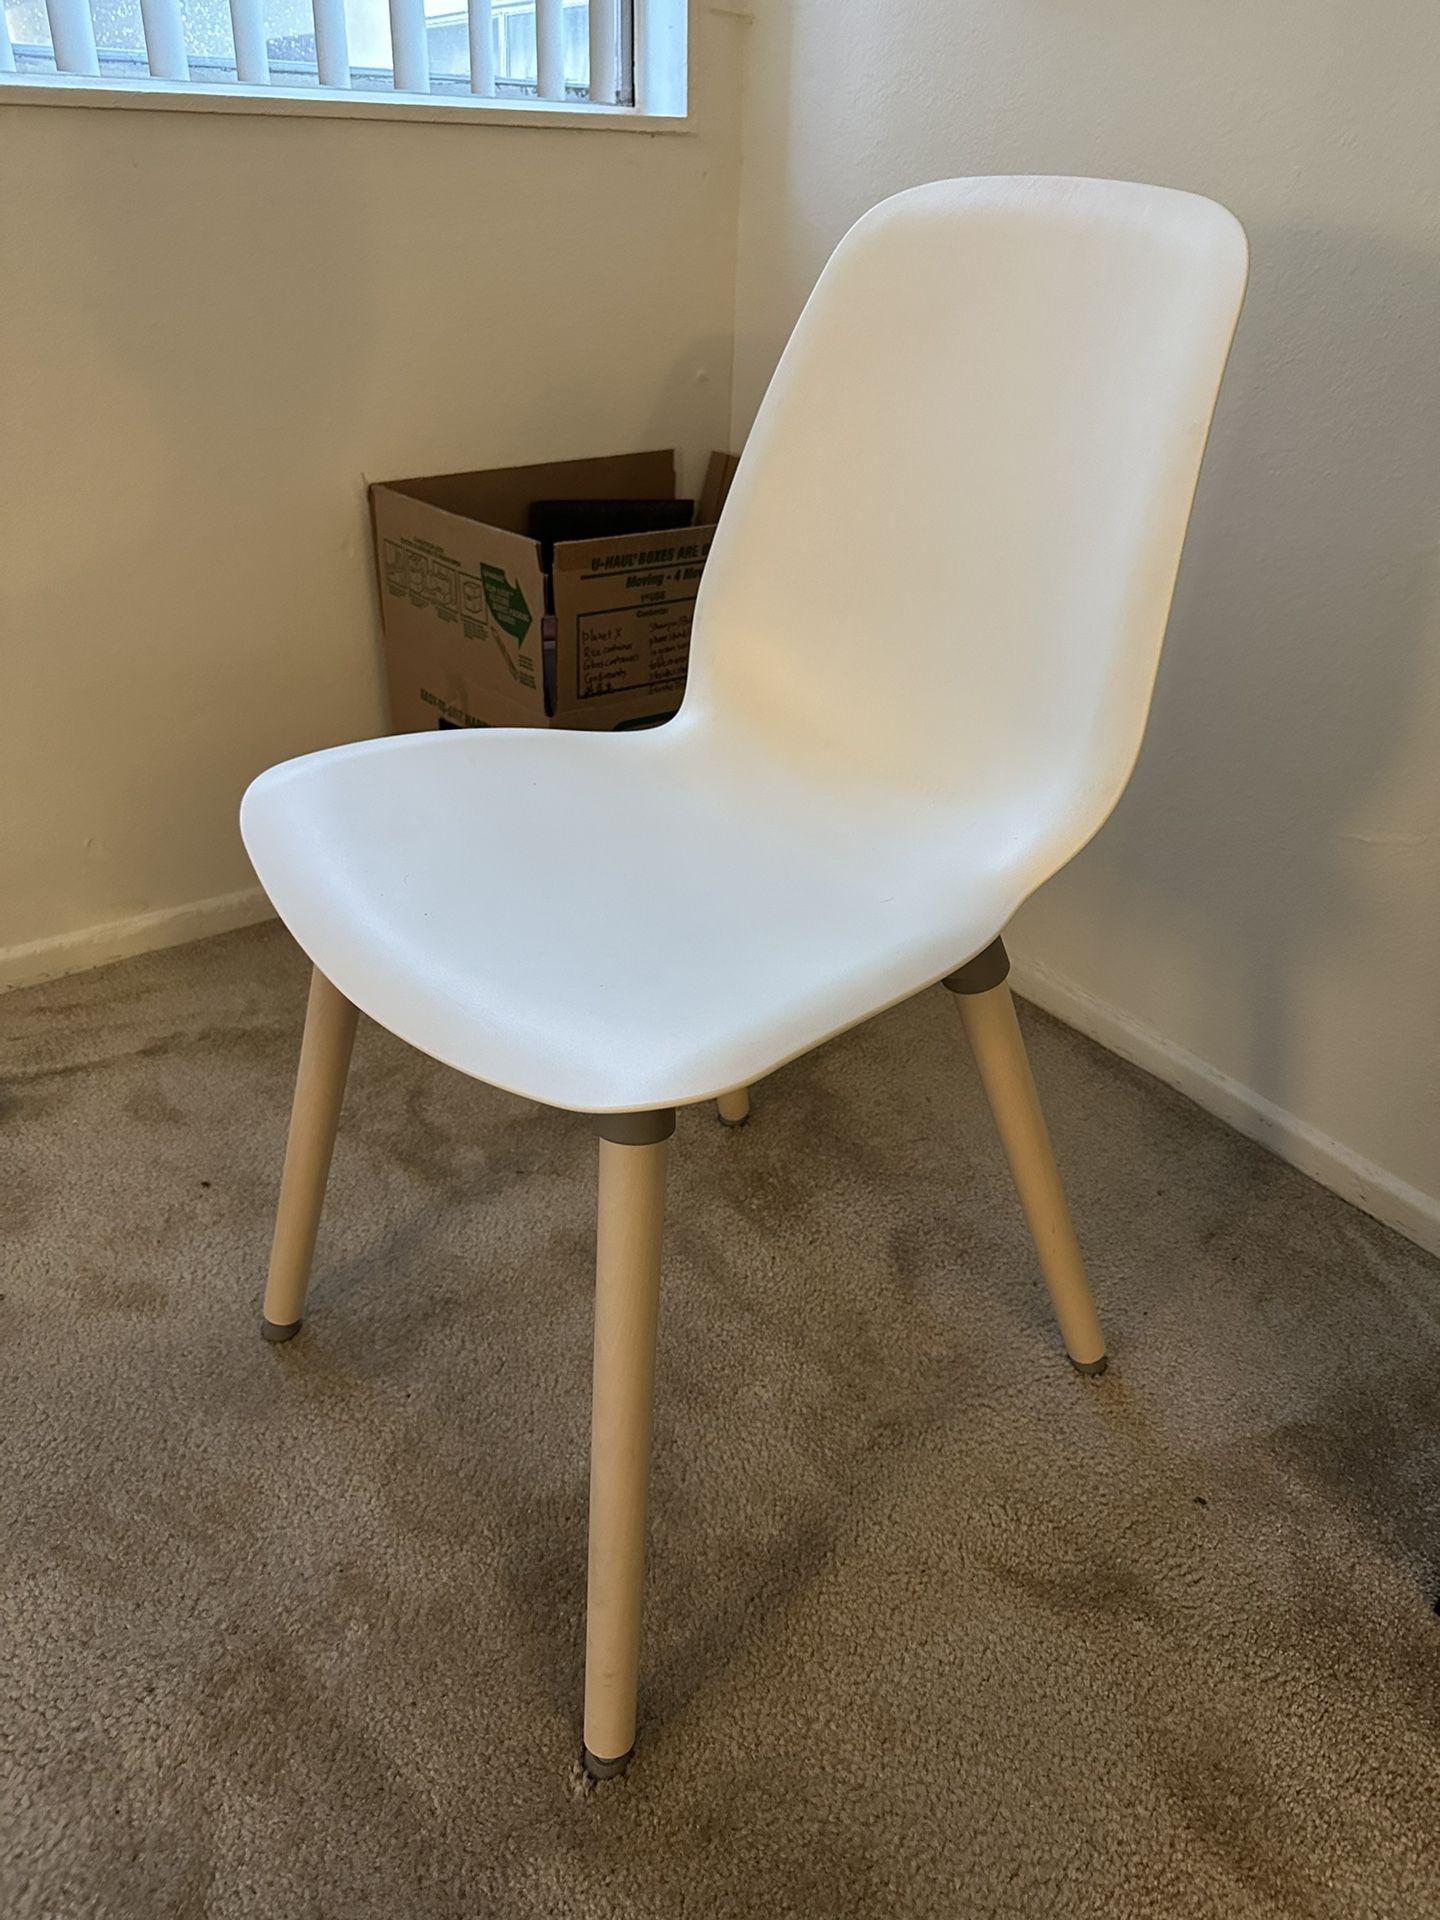 IKEA Desk Chair